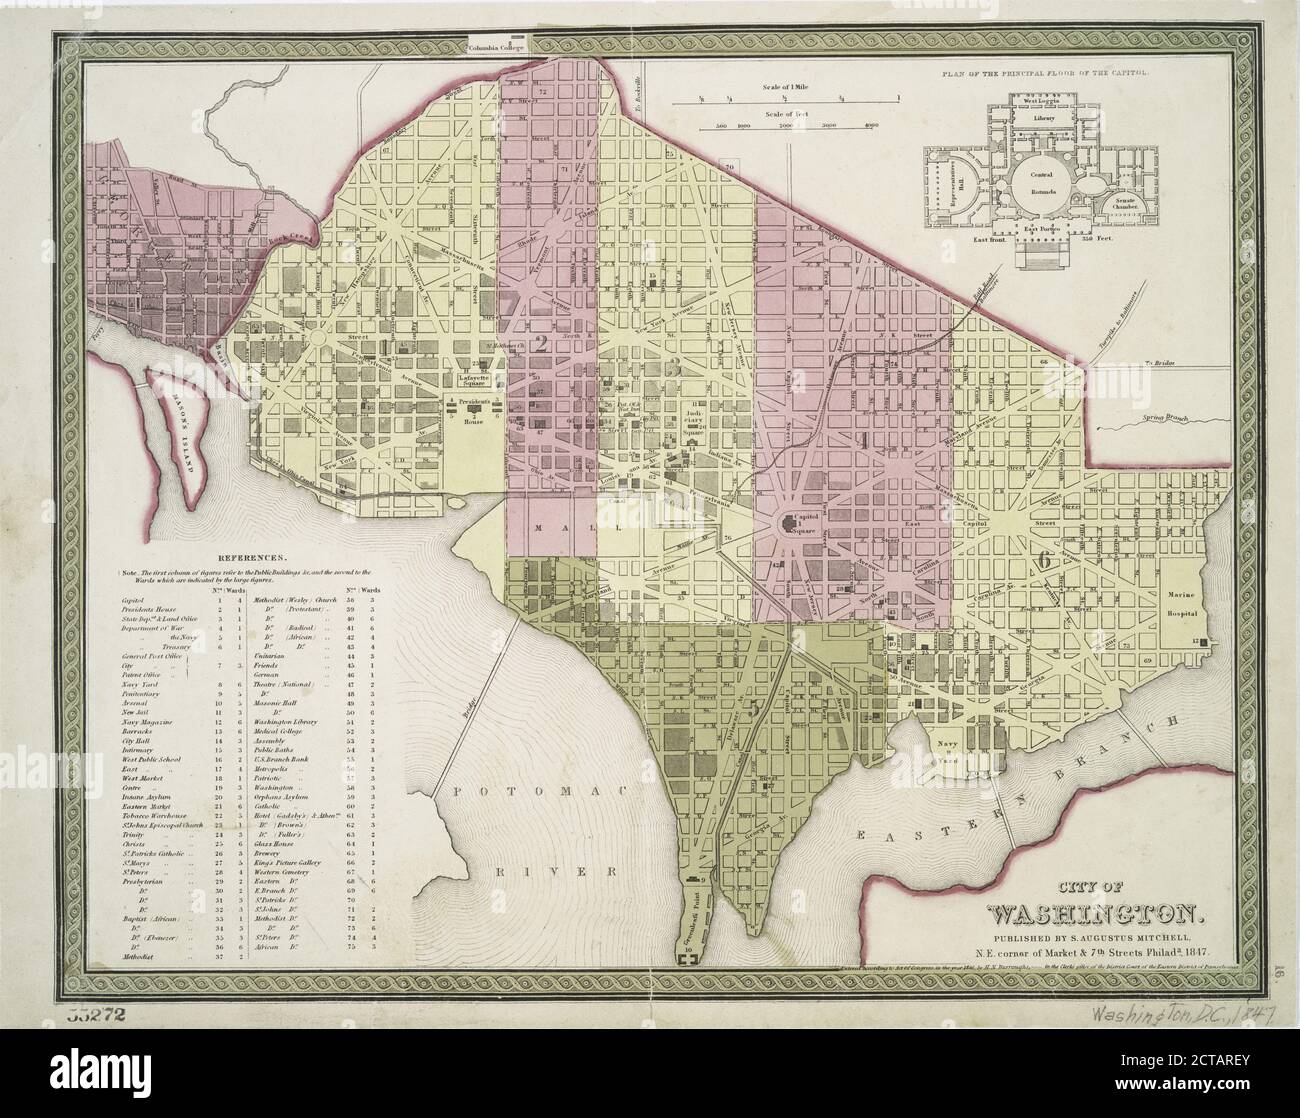 Stadt Washington., Standbild, Karten, 1847 Stockfoto